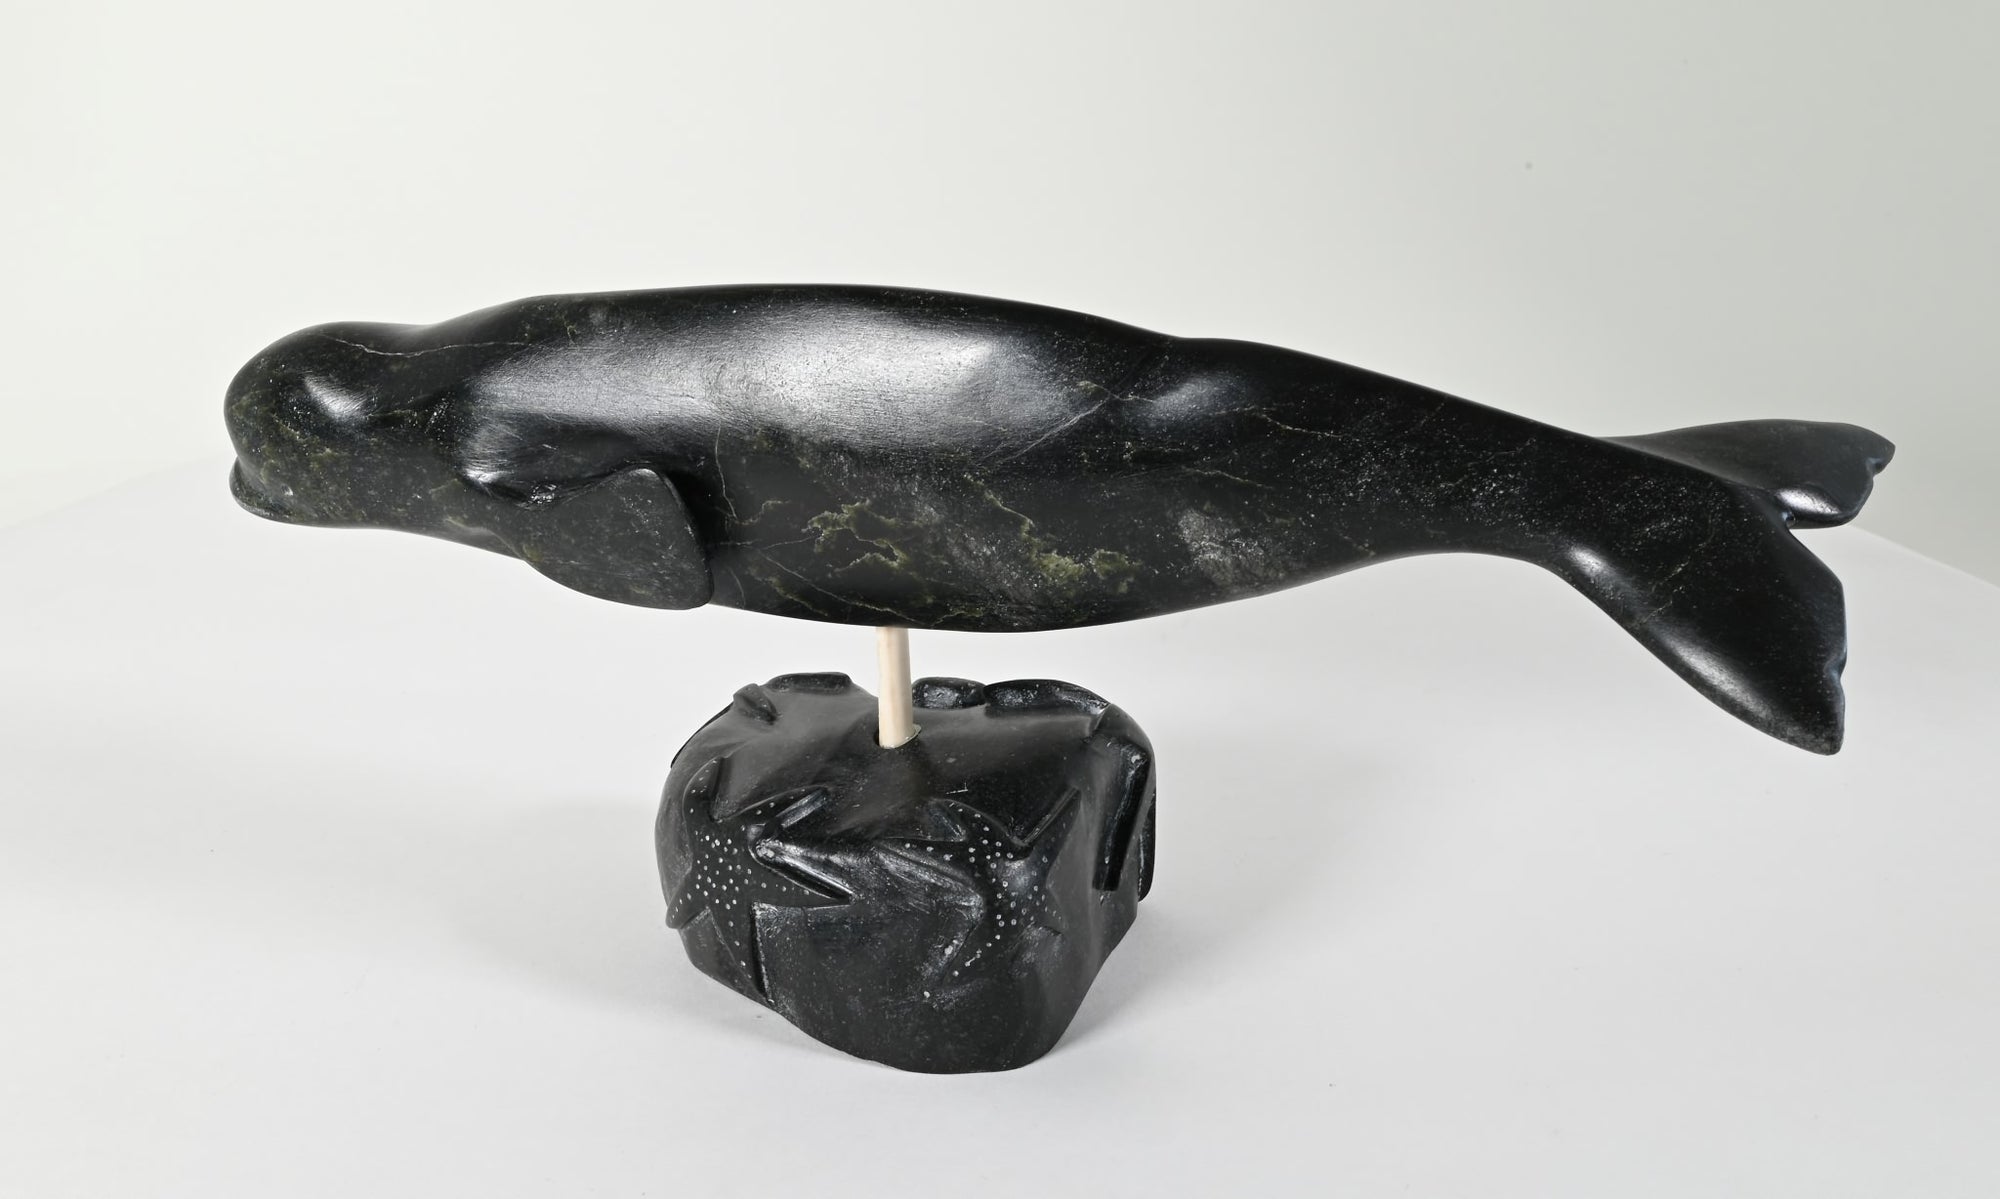 Beluga Whale by Johnny Meeko